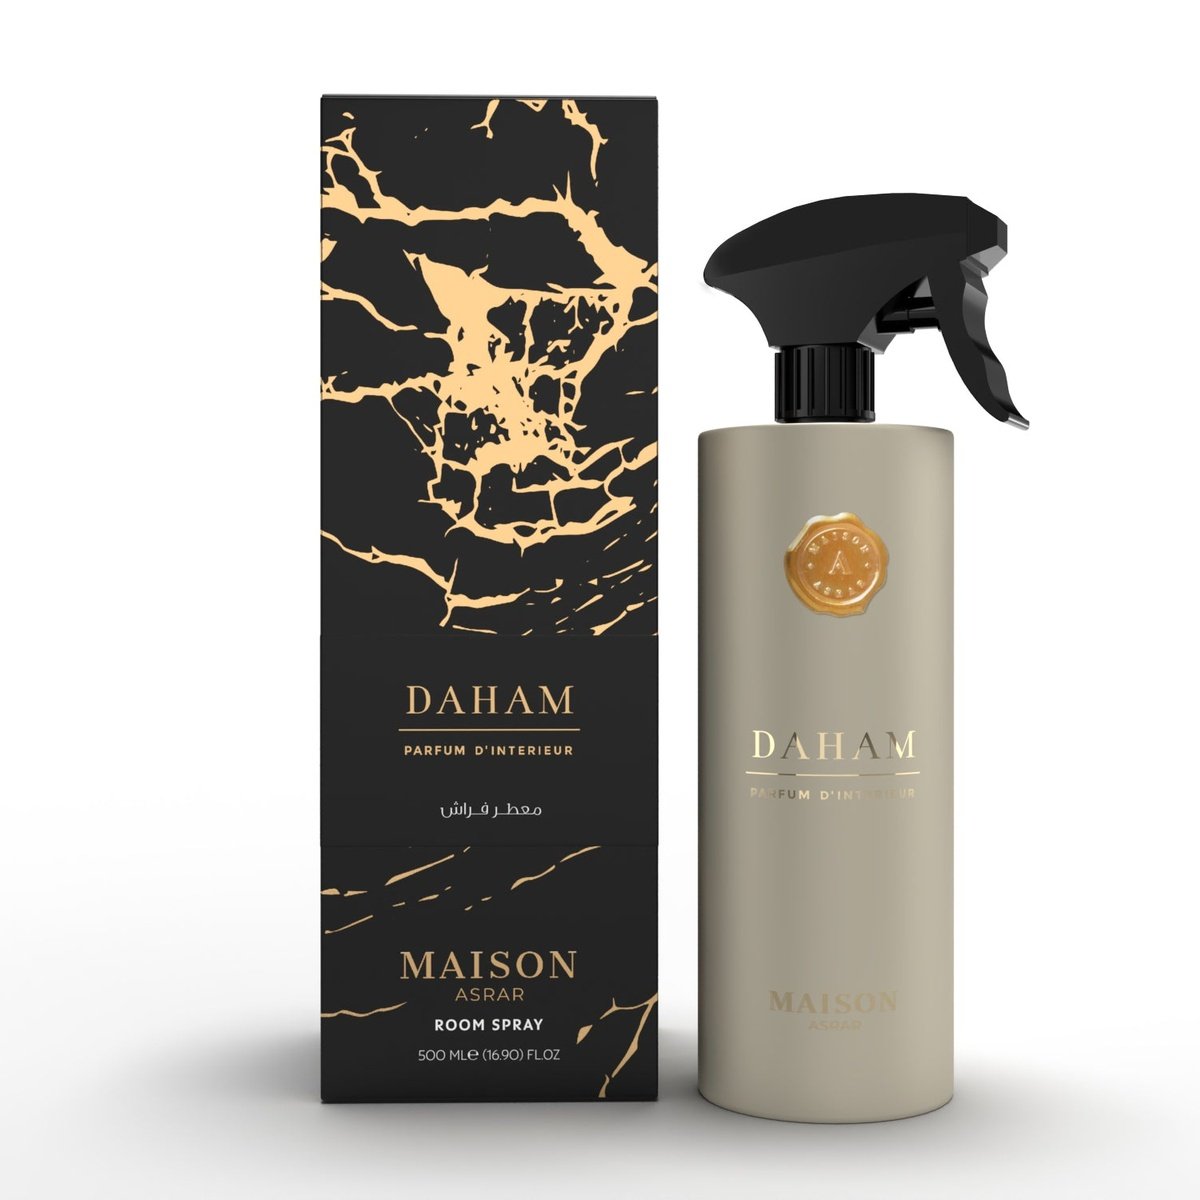 DAHAM - Room Spray 500ml By Maison Asrar